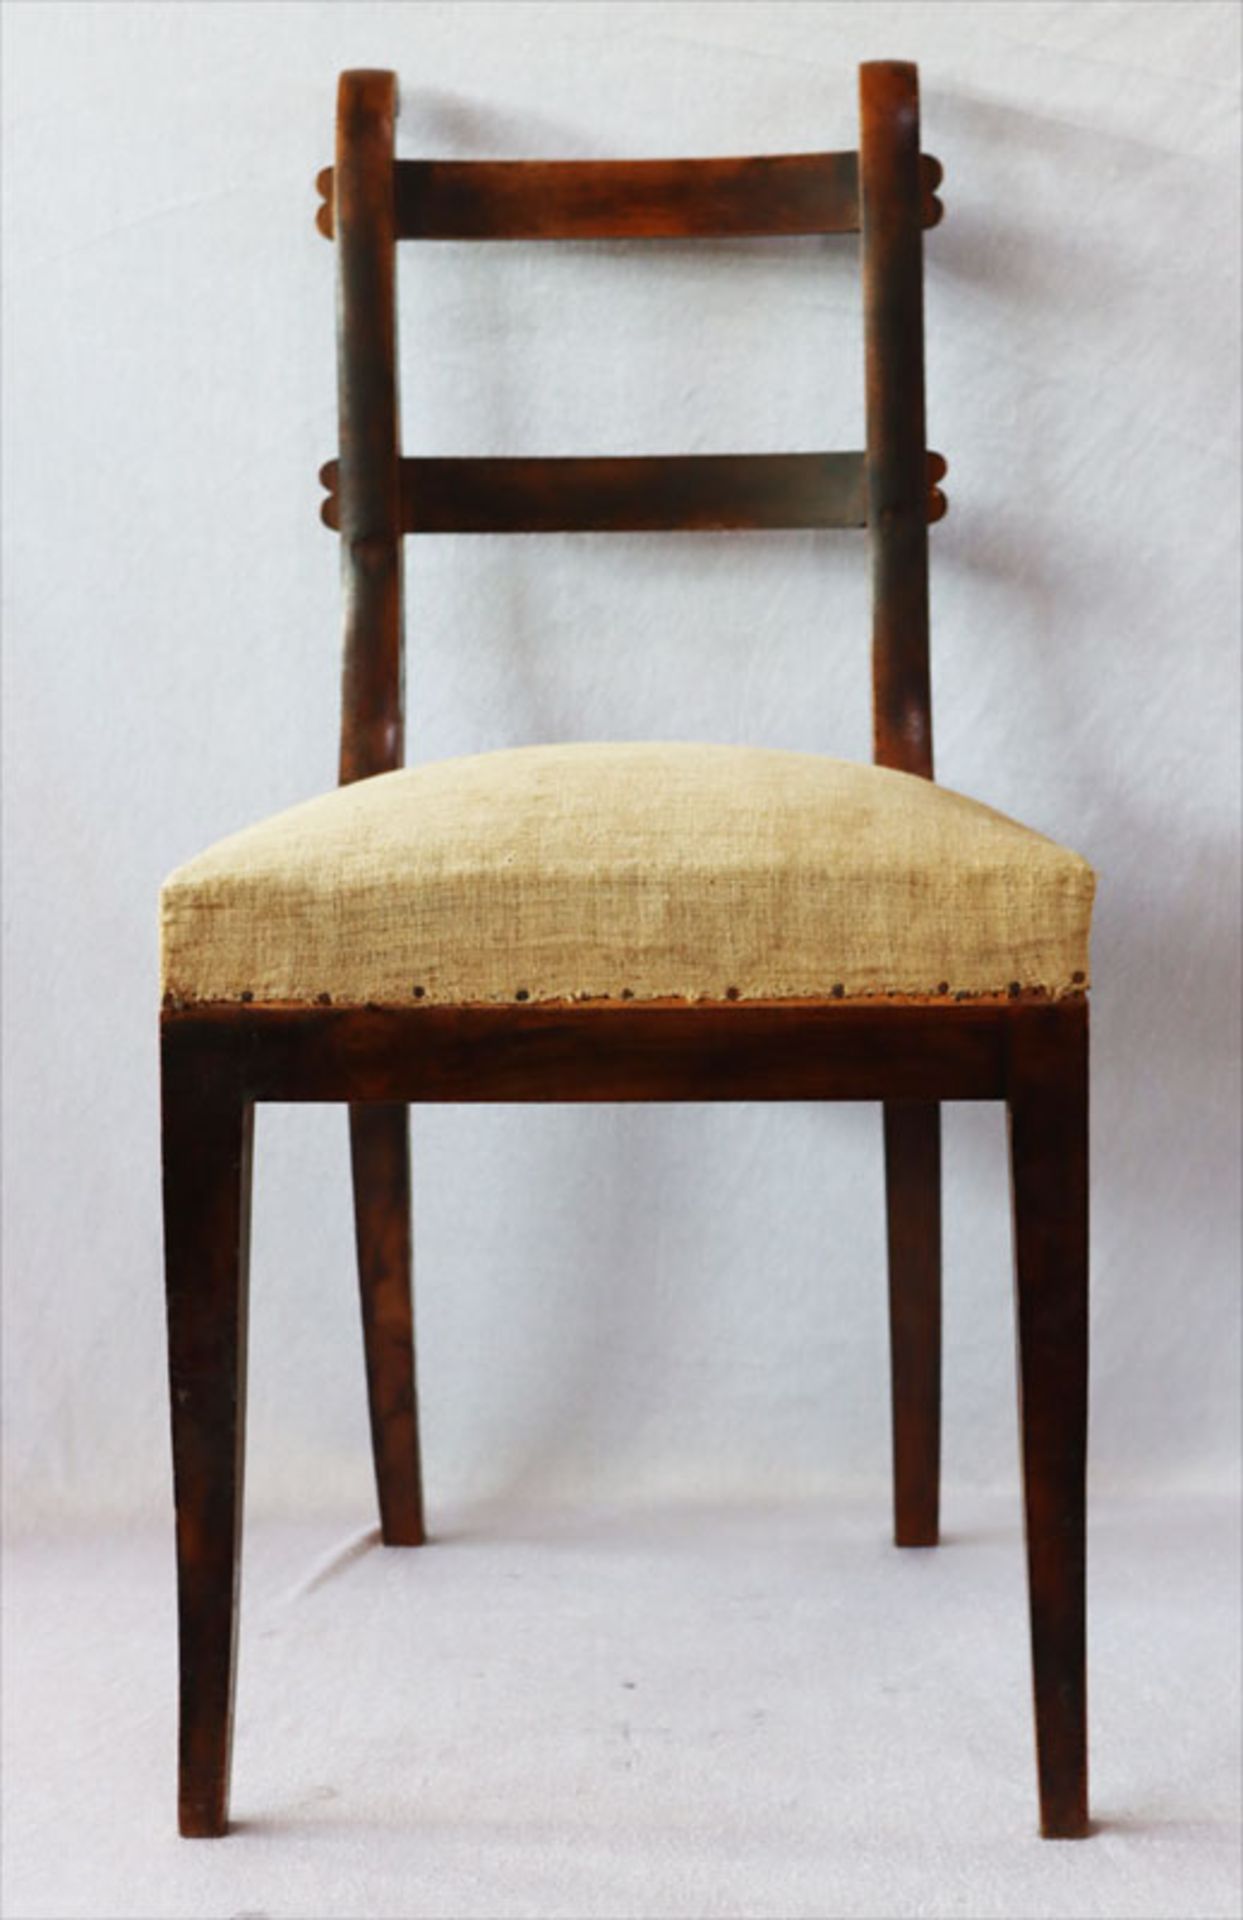 Satz von 5 Holzstühlen mit gepolstertem Sitz, H 86 cm, B 44 cm, T 38 cm, Alters- und